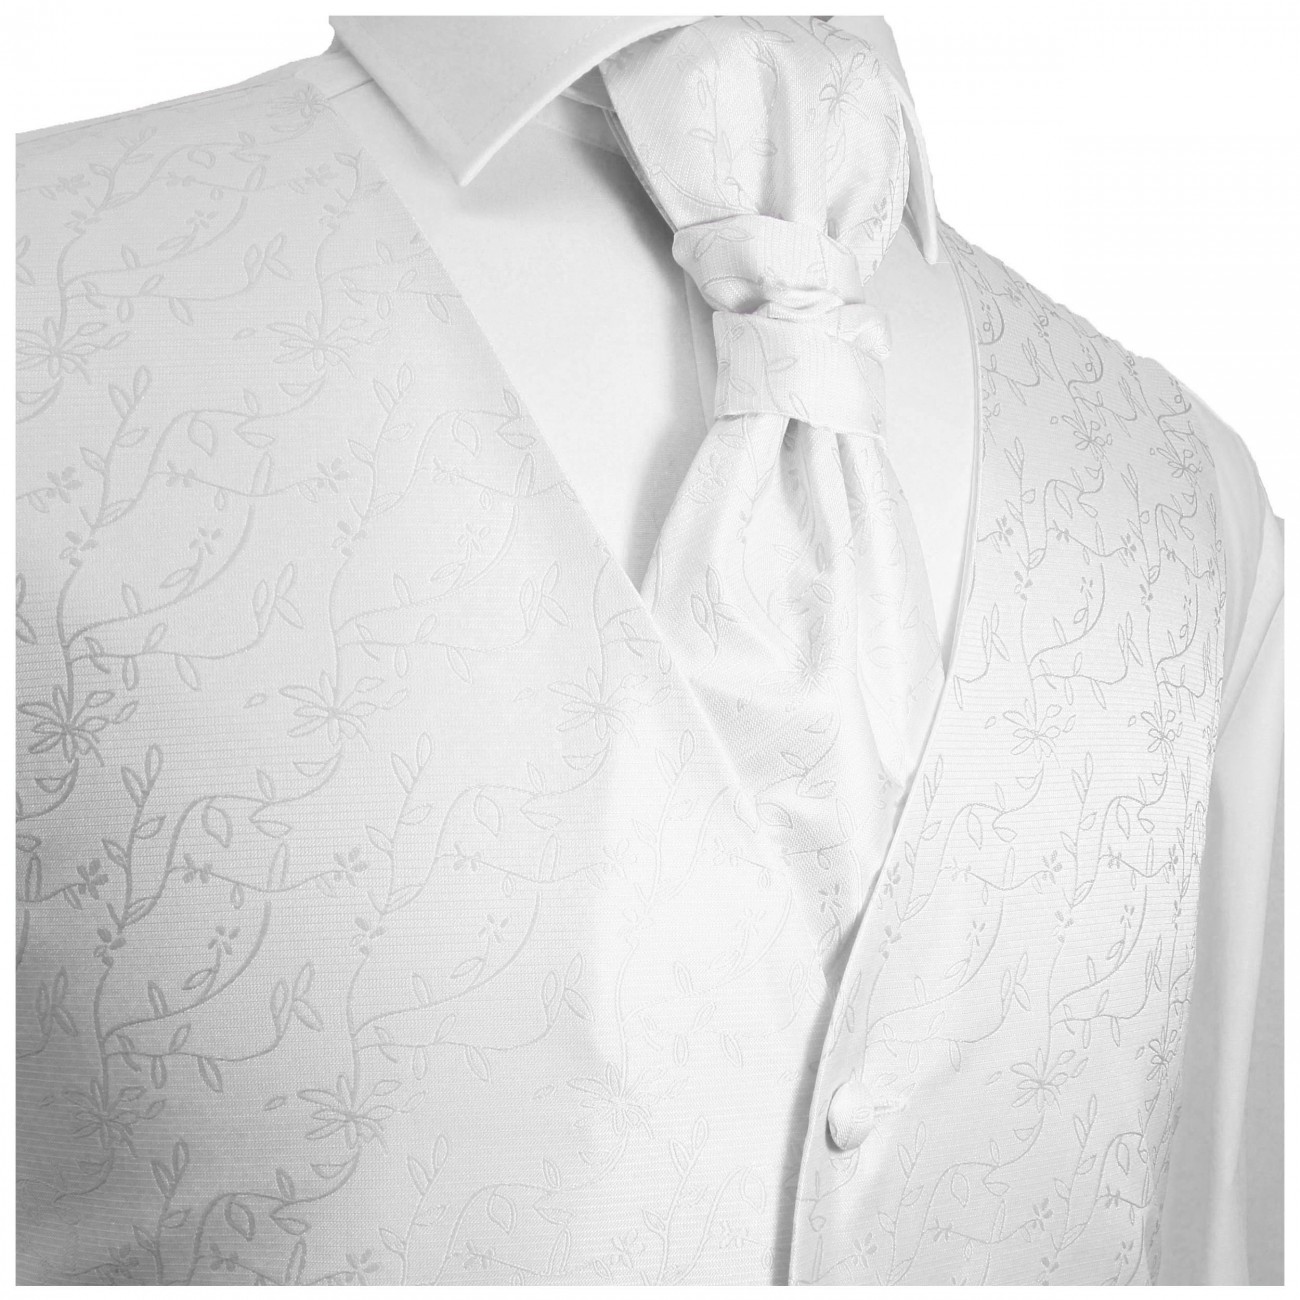 Weisse Hochzeitsweste floral mit Plastron Krawatte Einstecktuch und Manschettenknöpfen v20